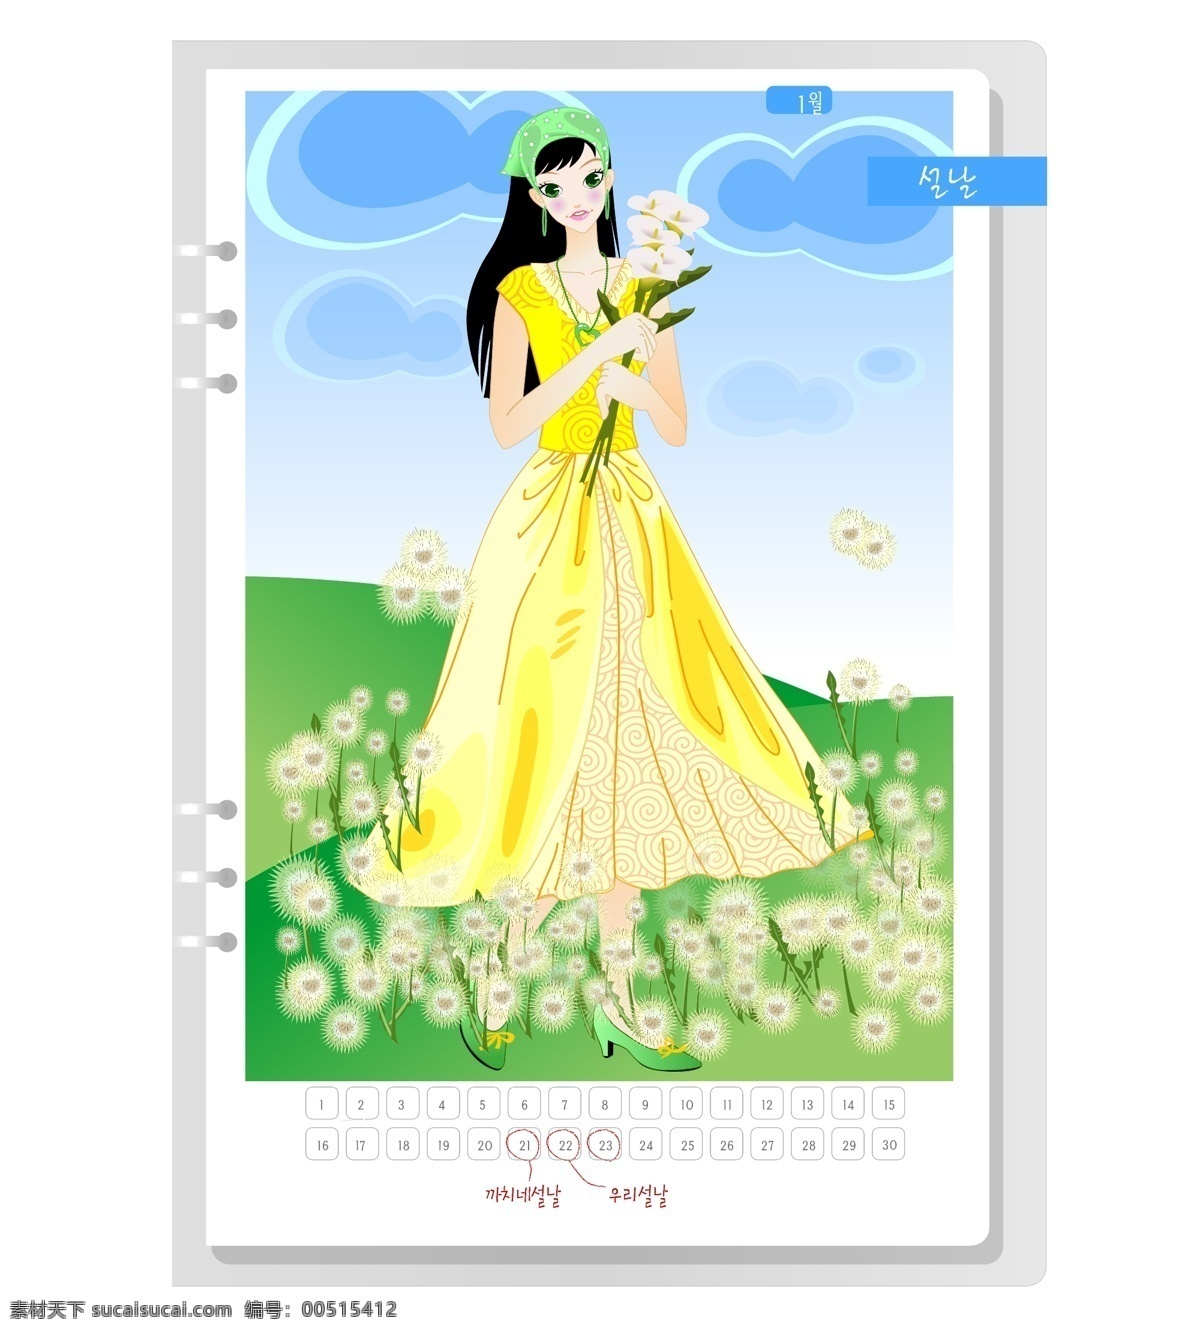 韩国 女生 月历 卡 矢量图 39 免费 插画 花朵 卡通 其他矢量图